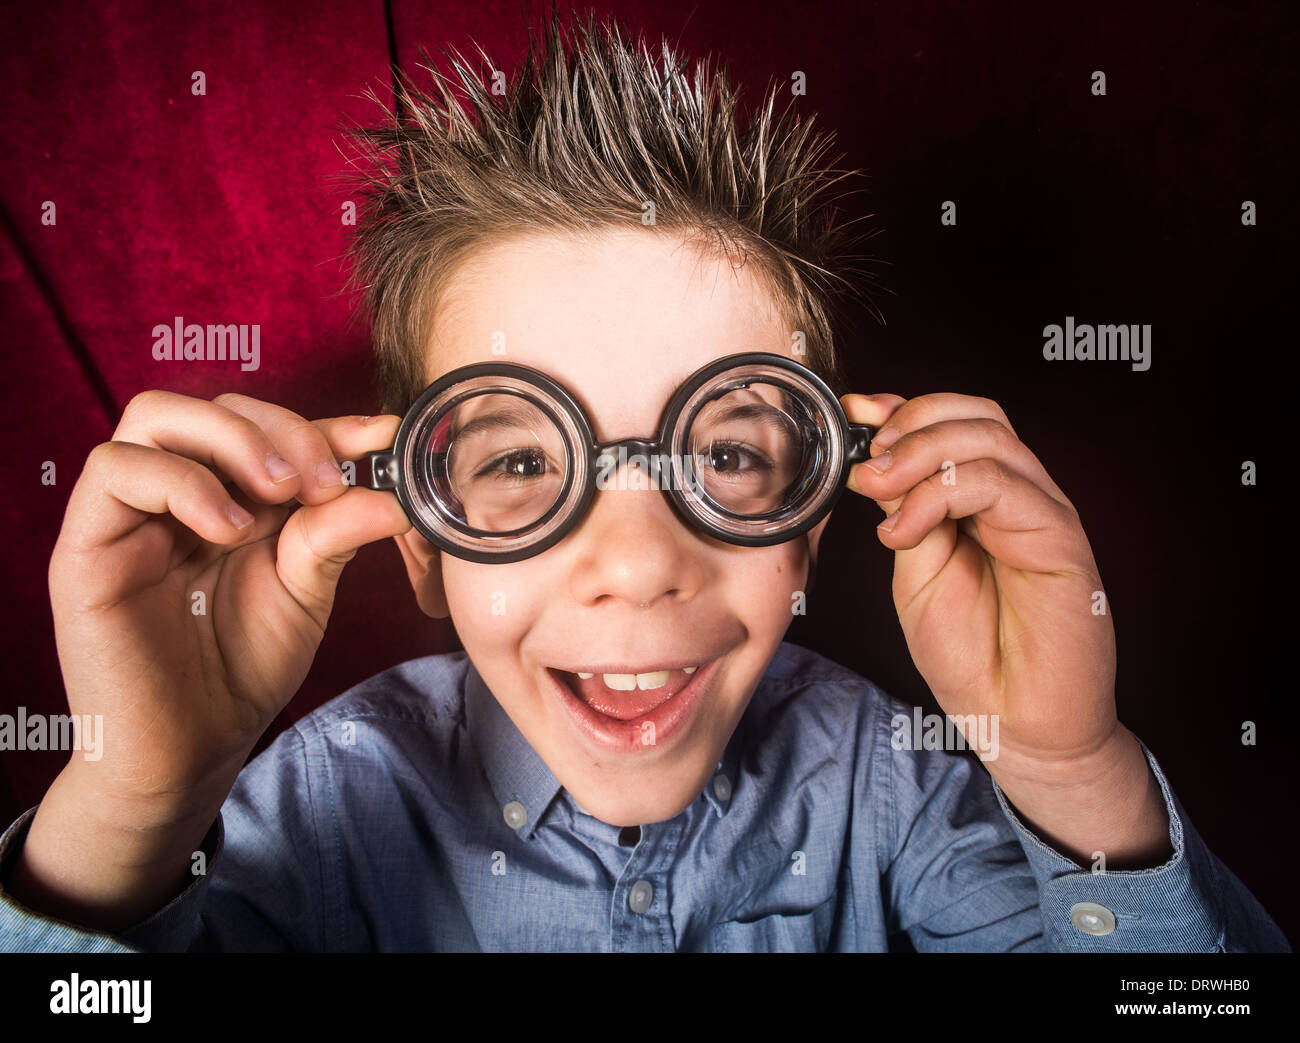 Lächelte Kind mit großen Gläsern. Roter Vorhang Hintergrund Stockfoto